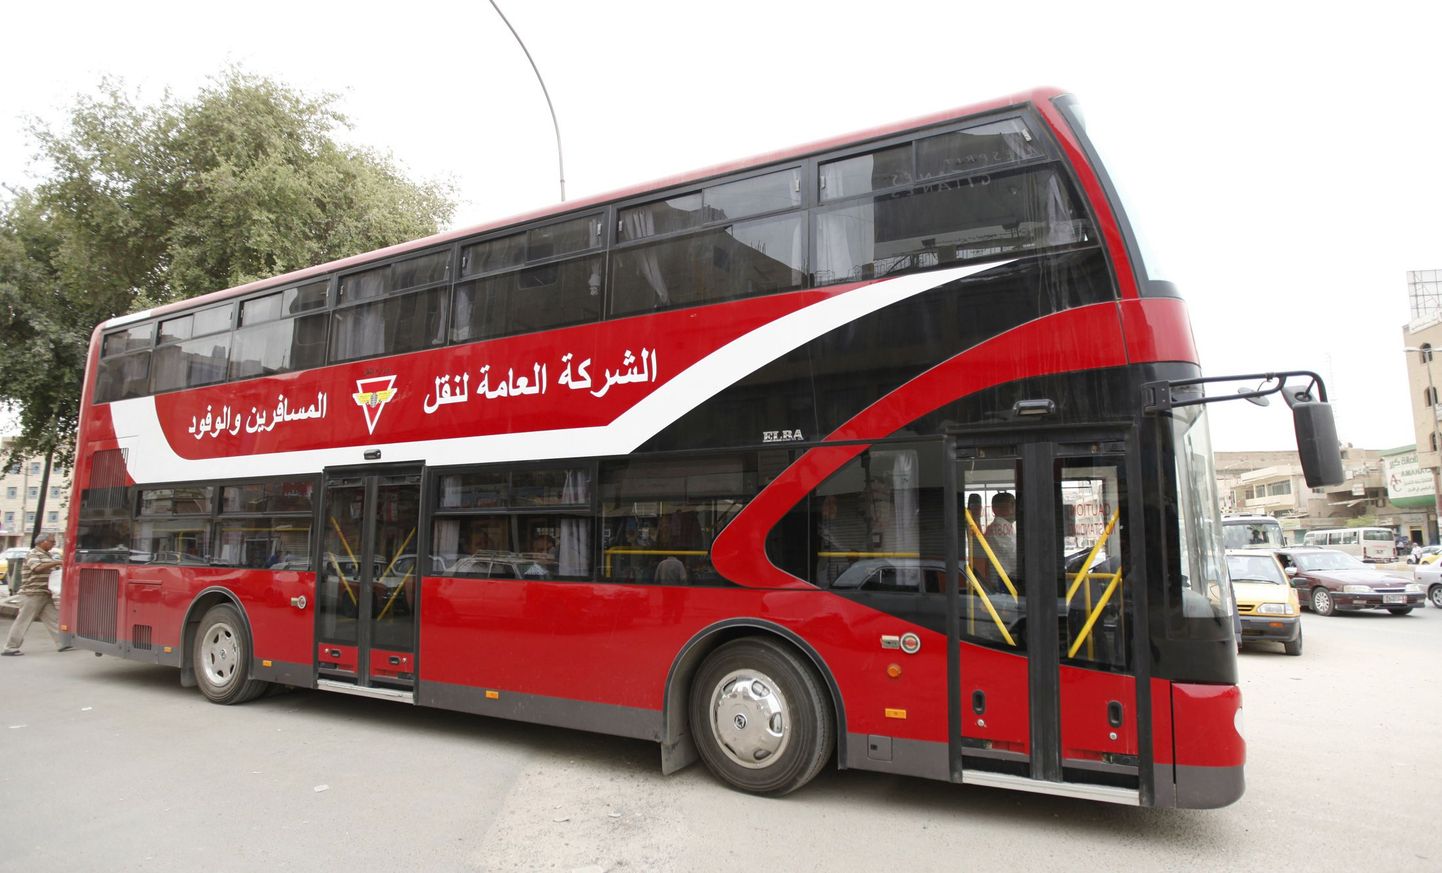 Bagdadis hakkavad sõitma kahekordsed bussid